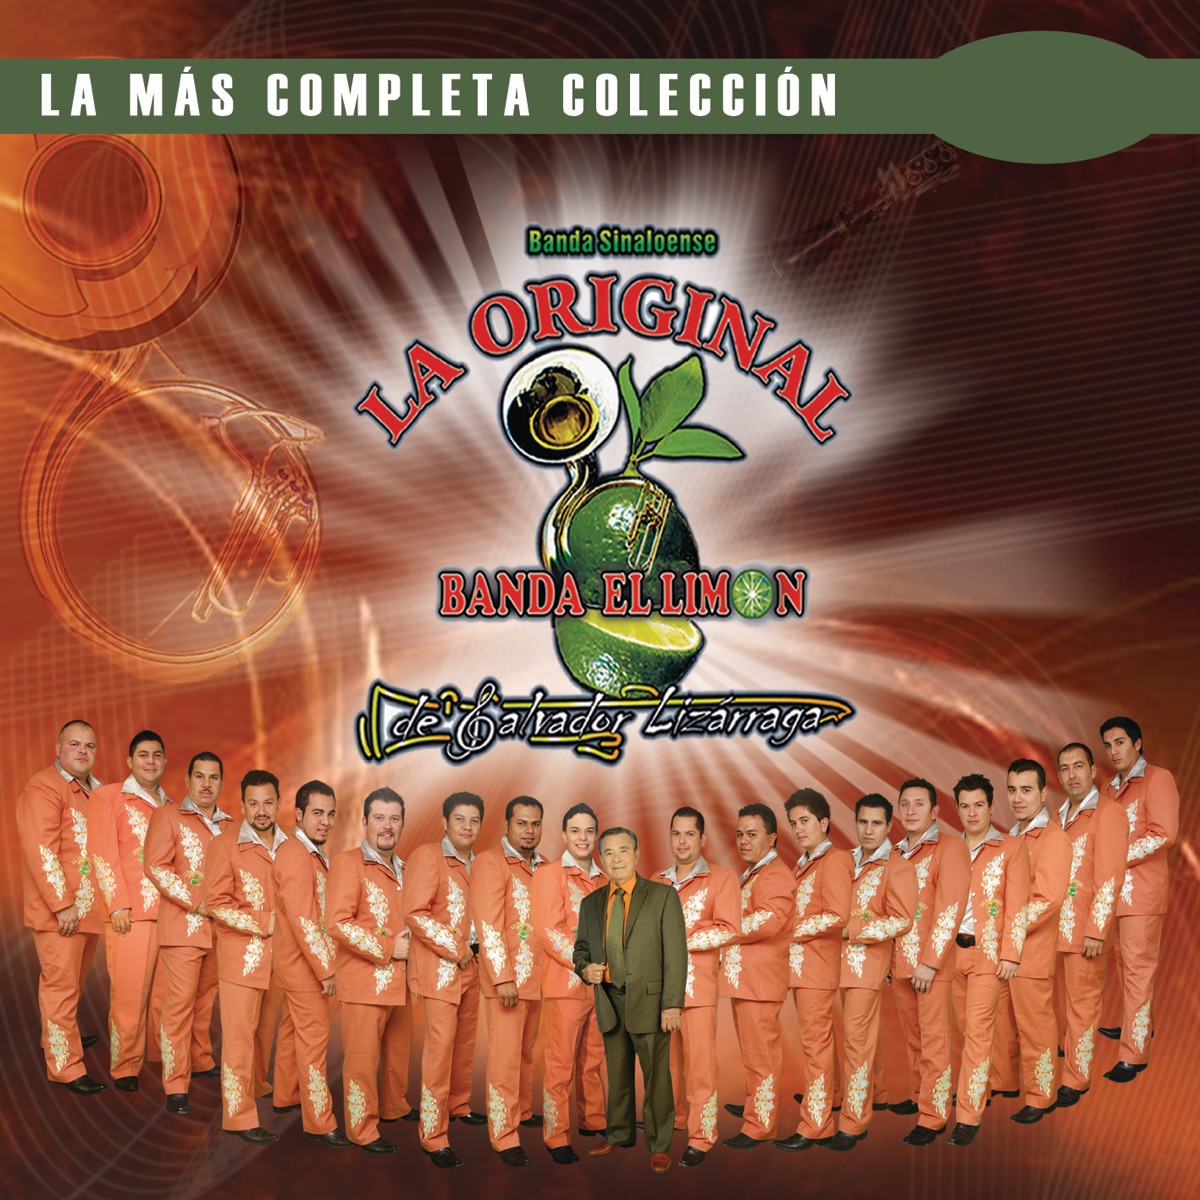 La Original Banda El Limon: música, canciones, letras